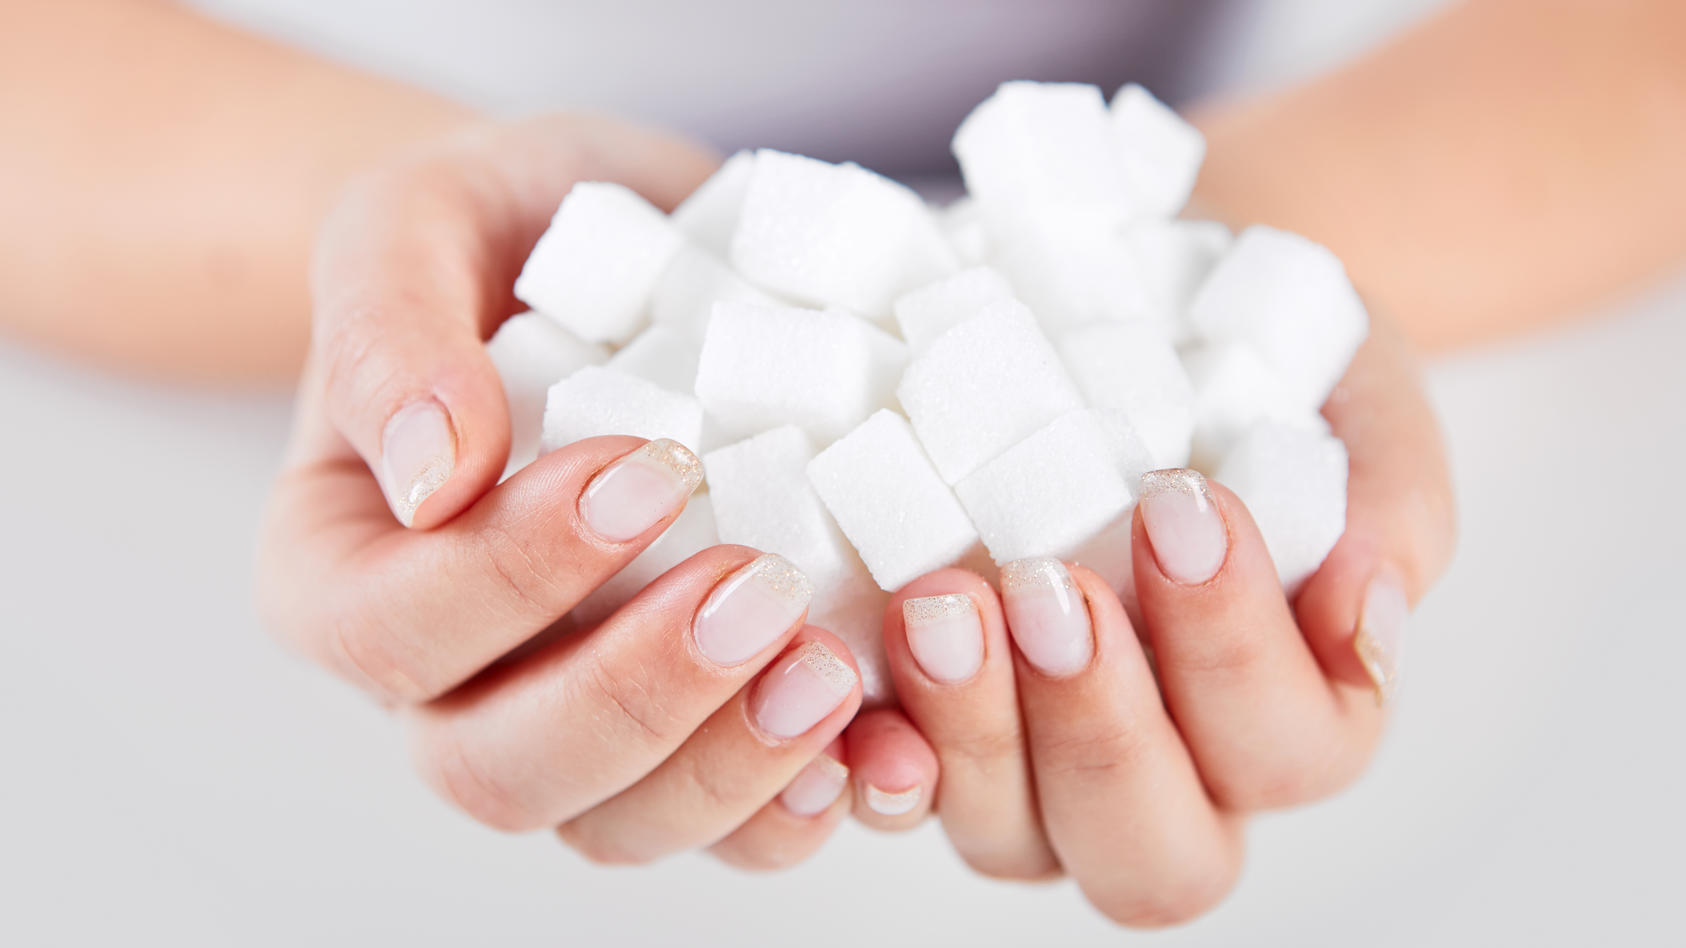 Auf Zucker im Alltag ganz verzichten? Gar nicht so leicht! Doch mit ein paar Tipps können wir unsere tägliche Zuckerzufuhr auf jeden Fall deutlich verringern!